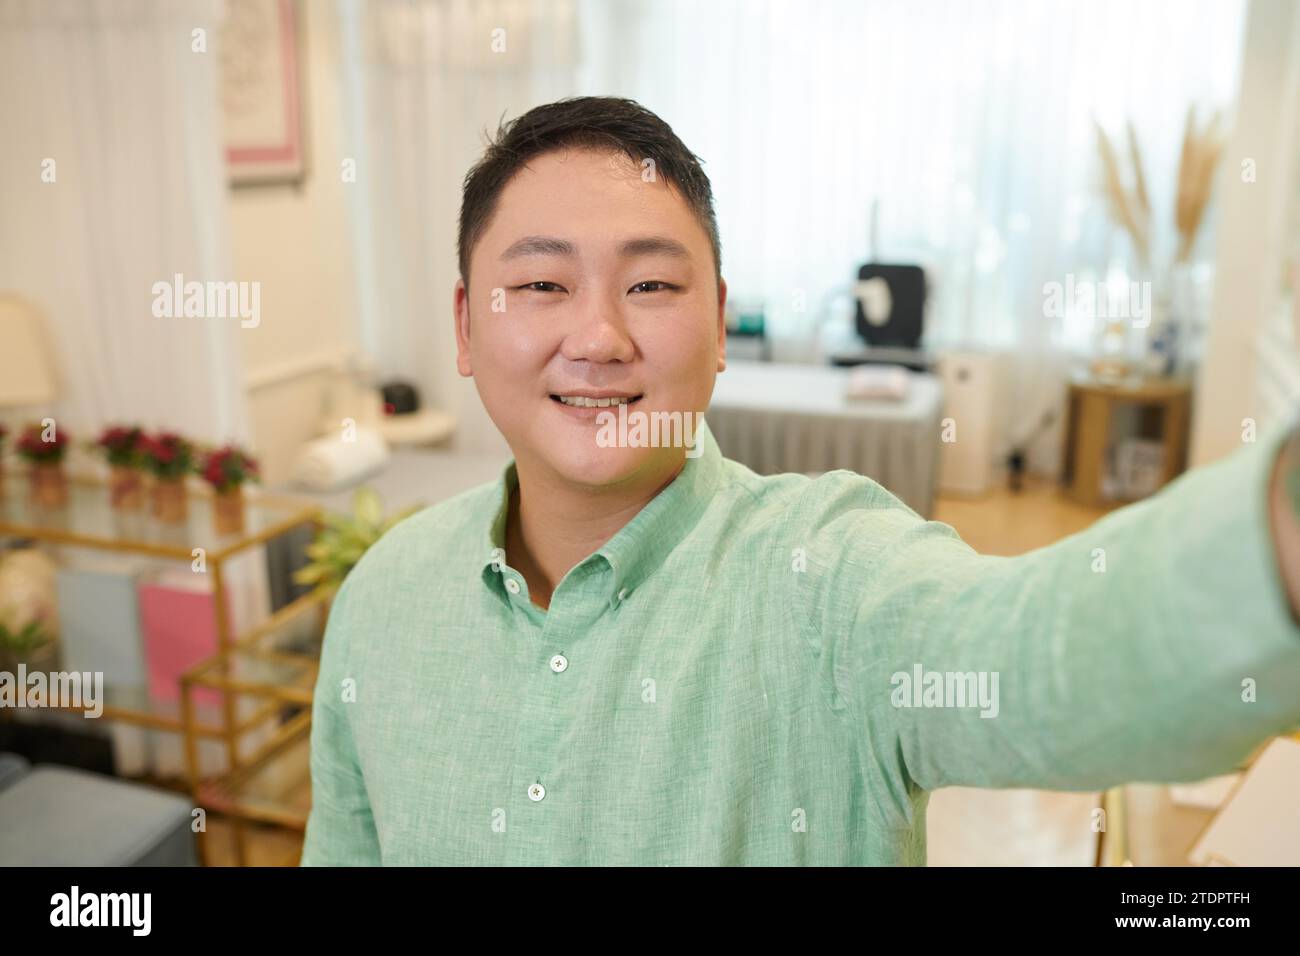 Smiling beauty salon owner taking selfie for social media Stock Photo